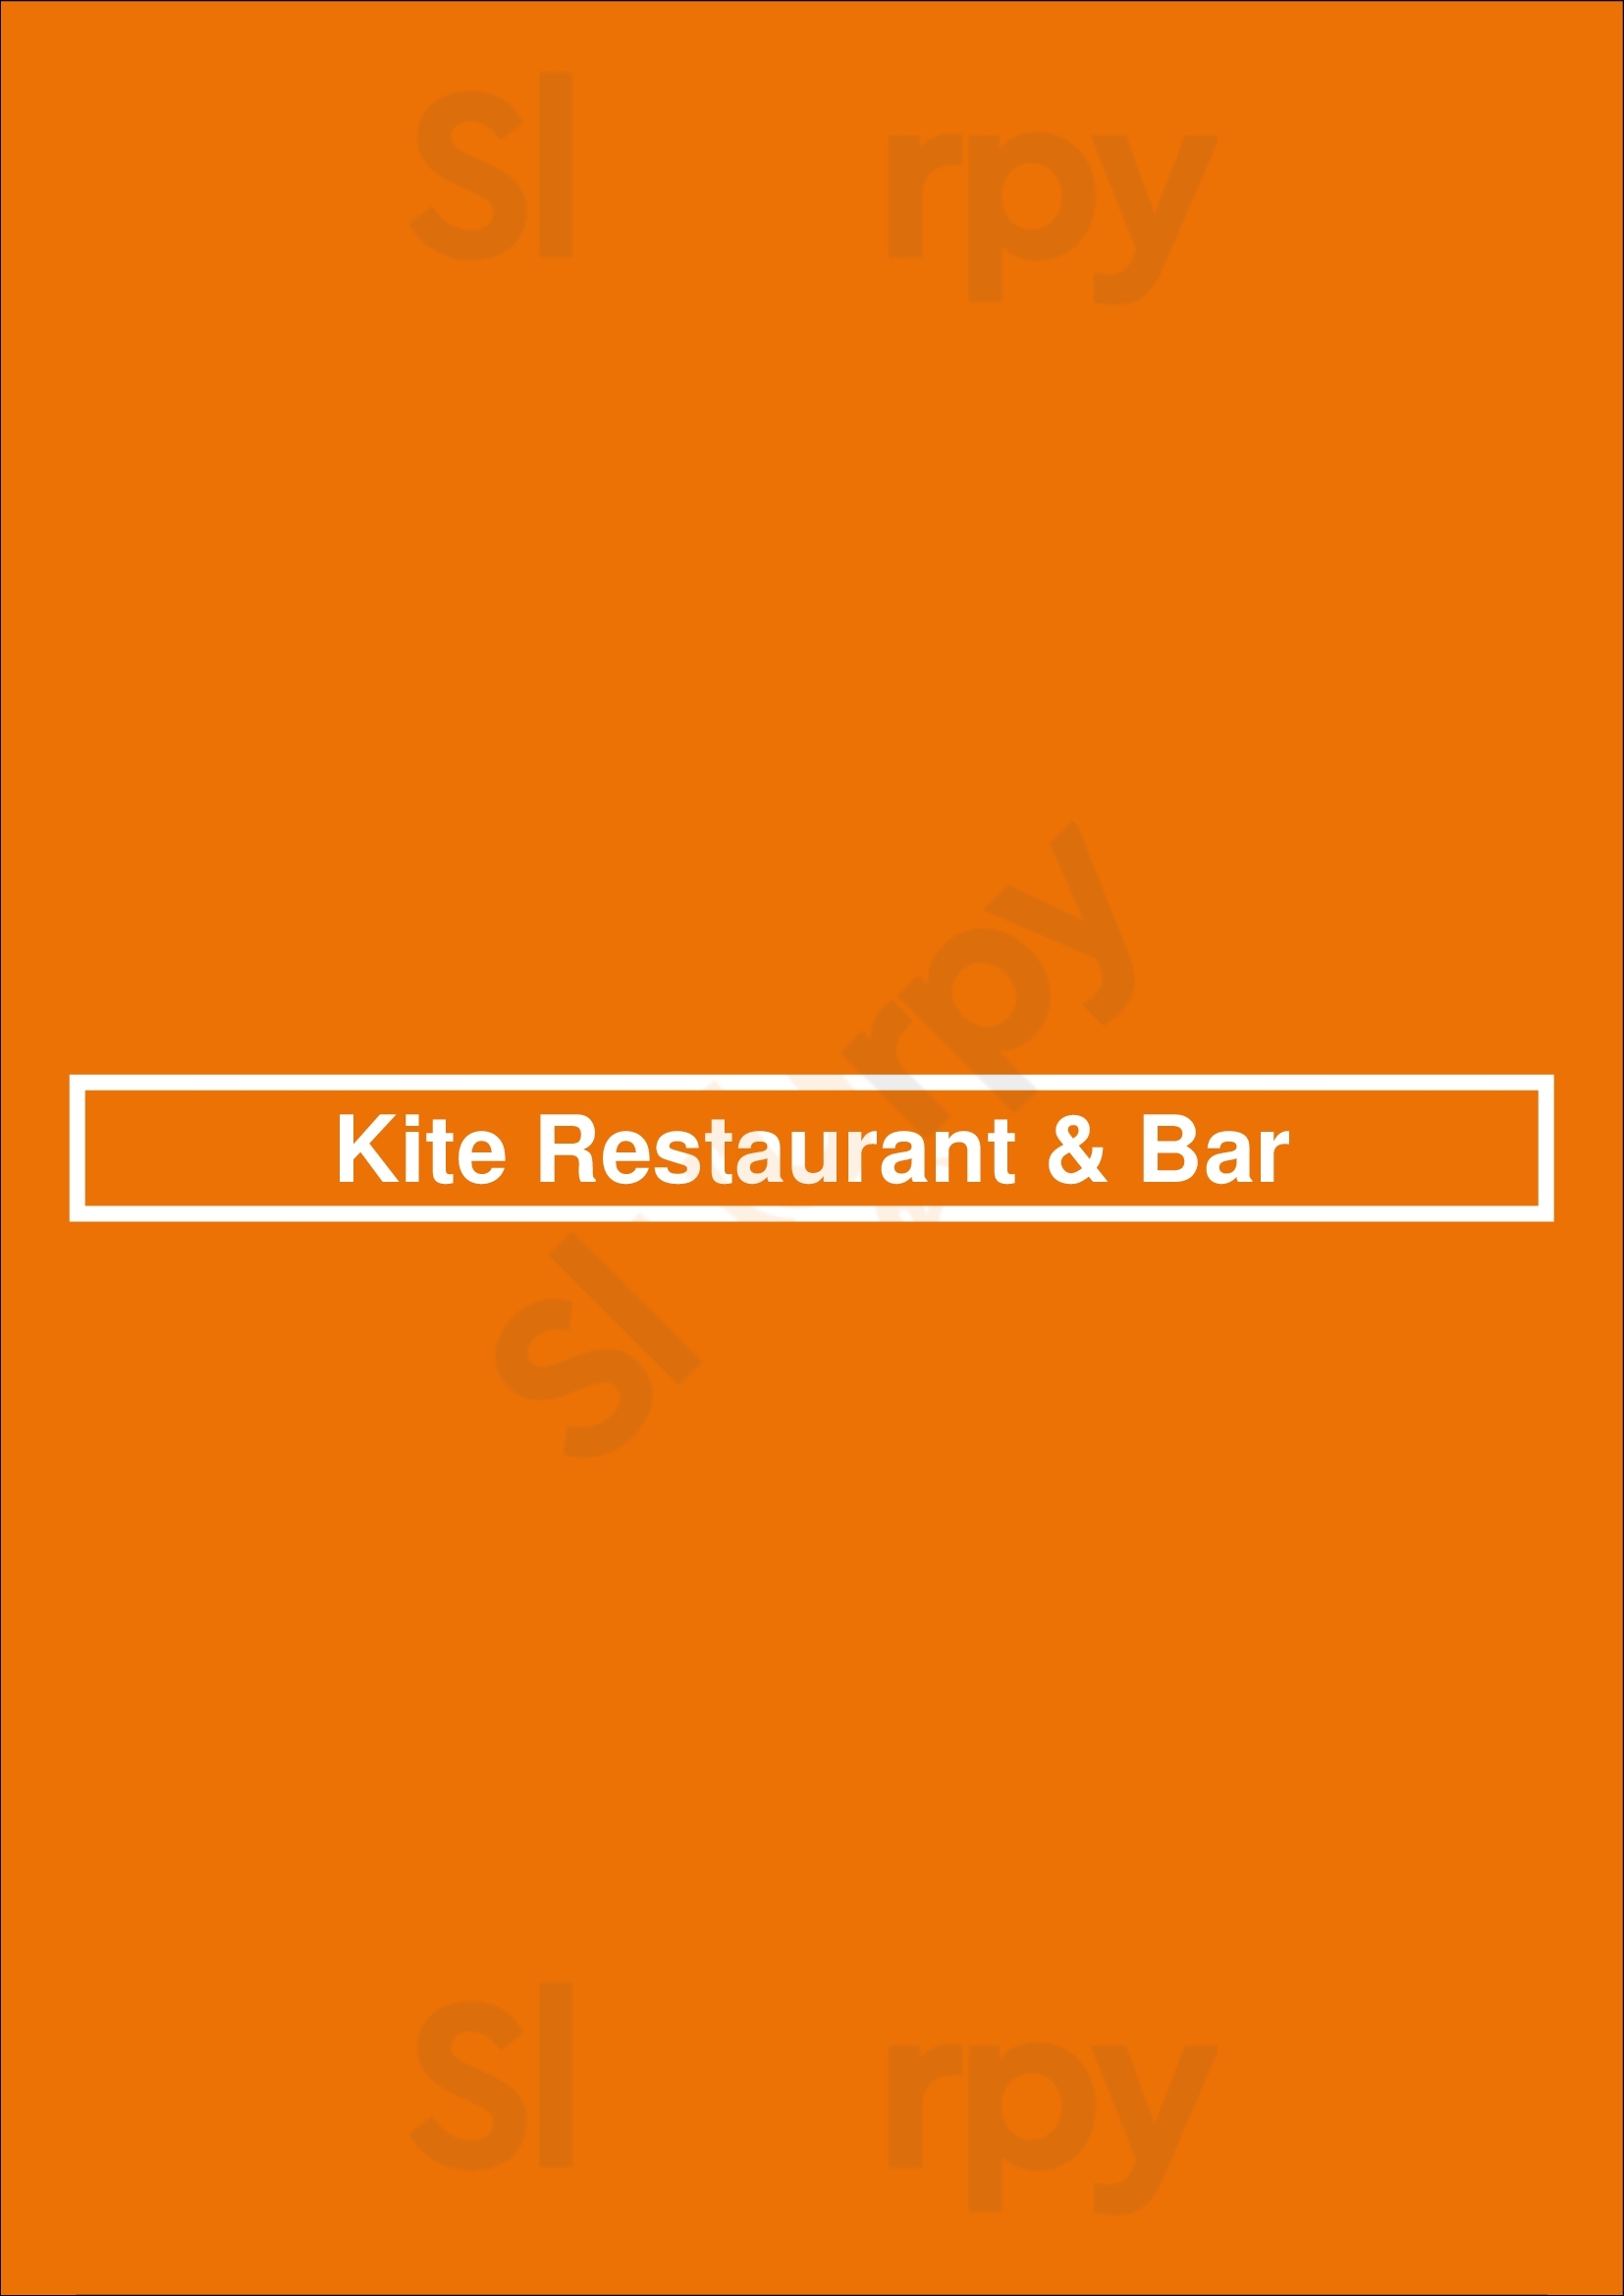 Kite Restaurant & Bar Rotterdam Menu - 1